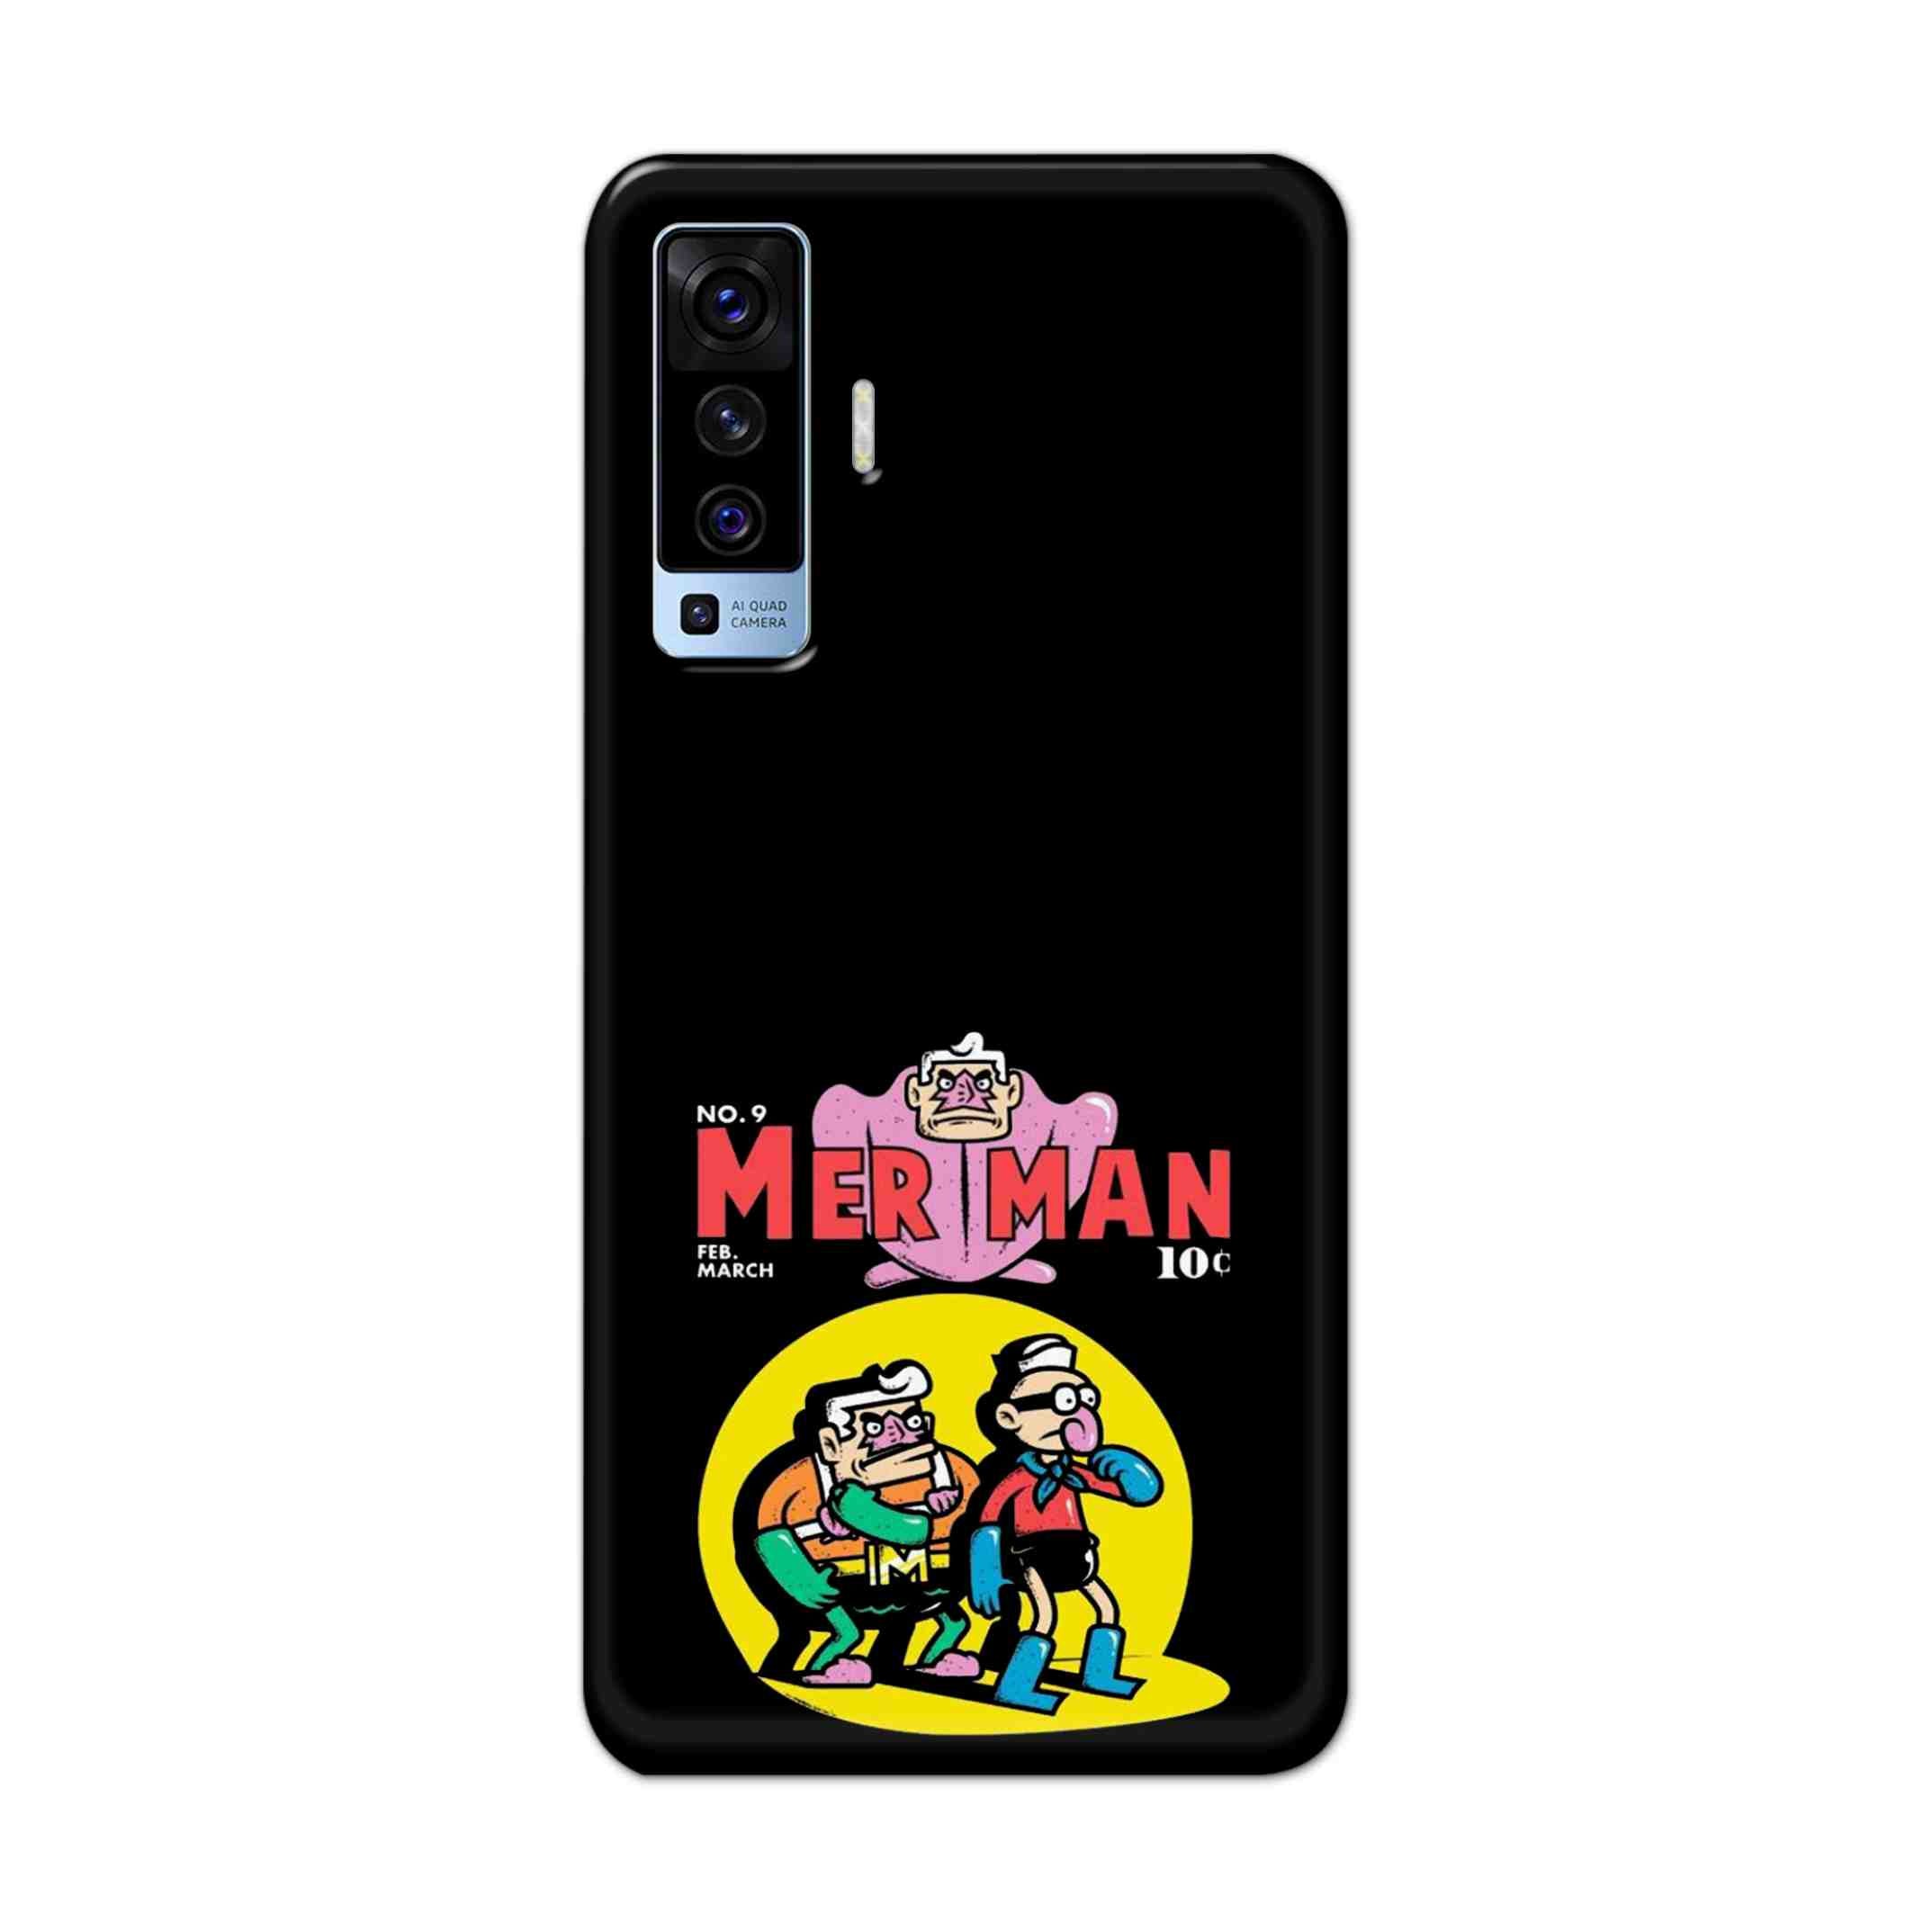 Buy Merman Hard Back Mobile Phone Case Cover For Vivo X50 Online